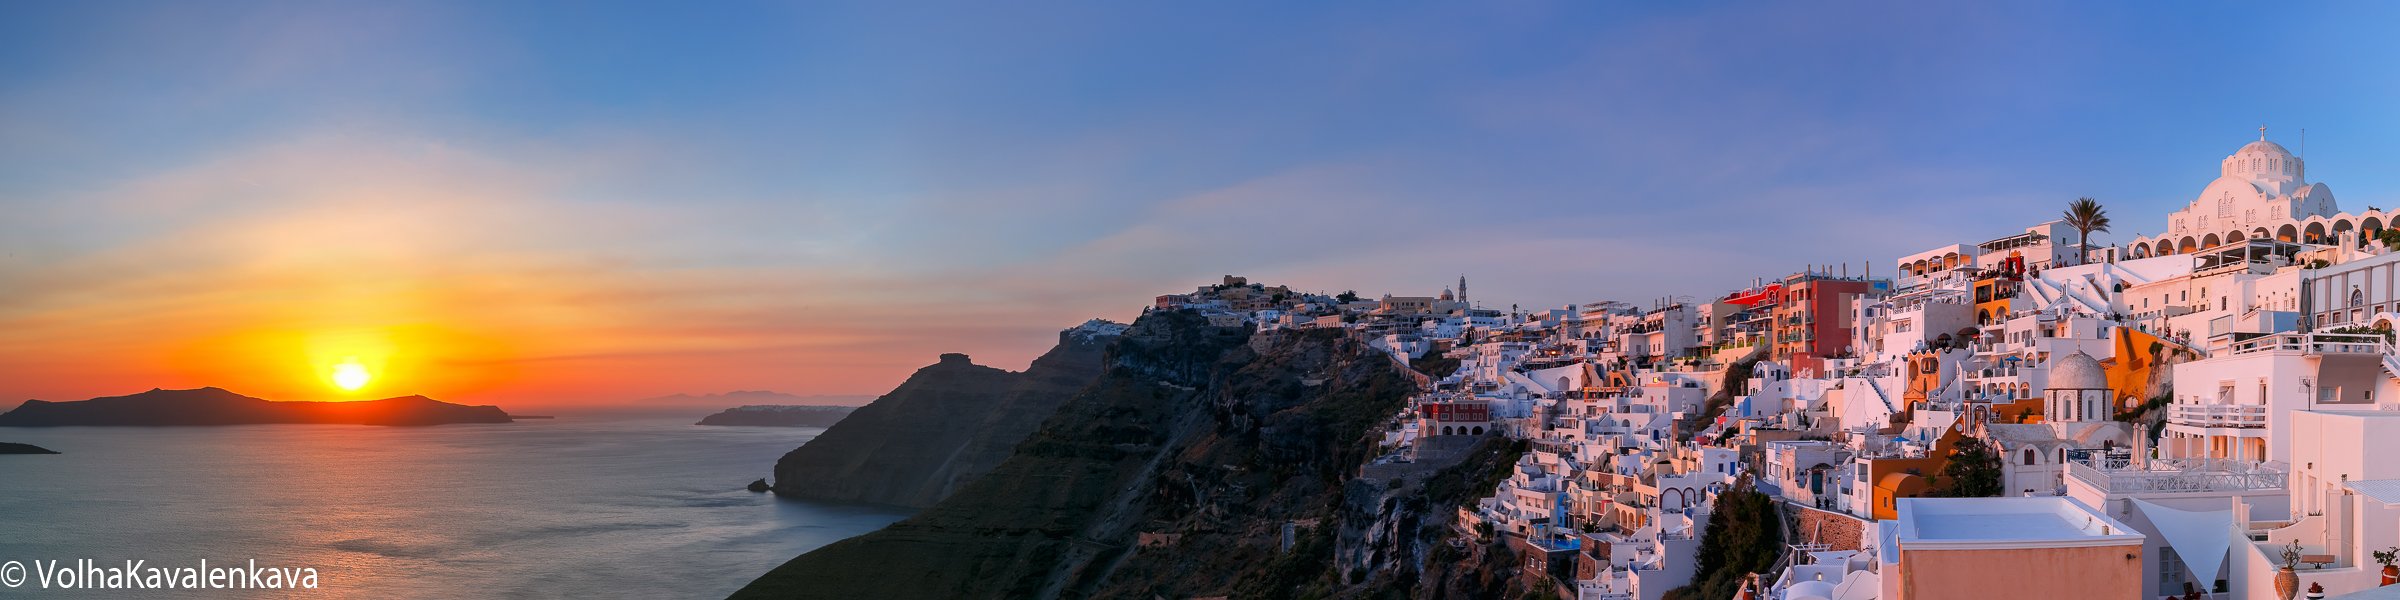 Фира Тирa санторини греция закат Fira sunset Santorini Greece панорама, Коваленкова Ольга